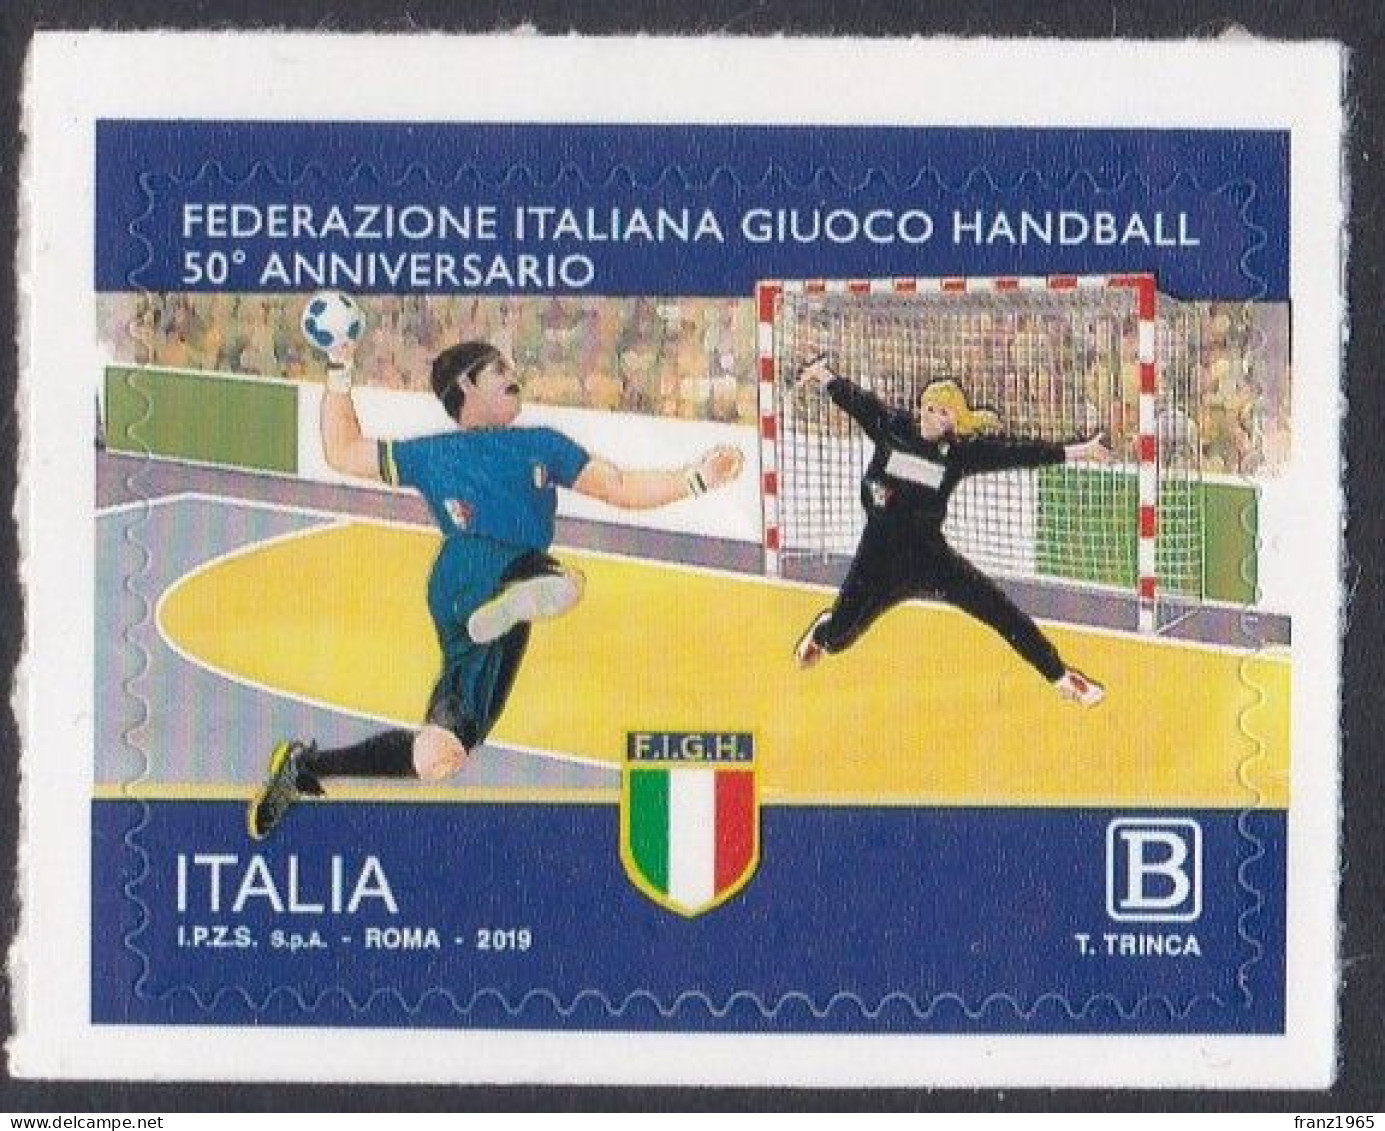 Italian Handball Federation - 2019 - Handbal